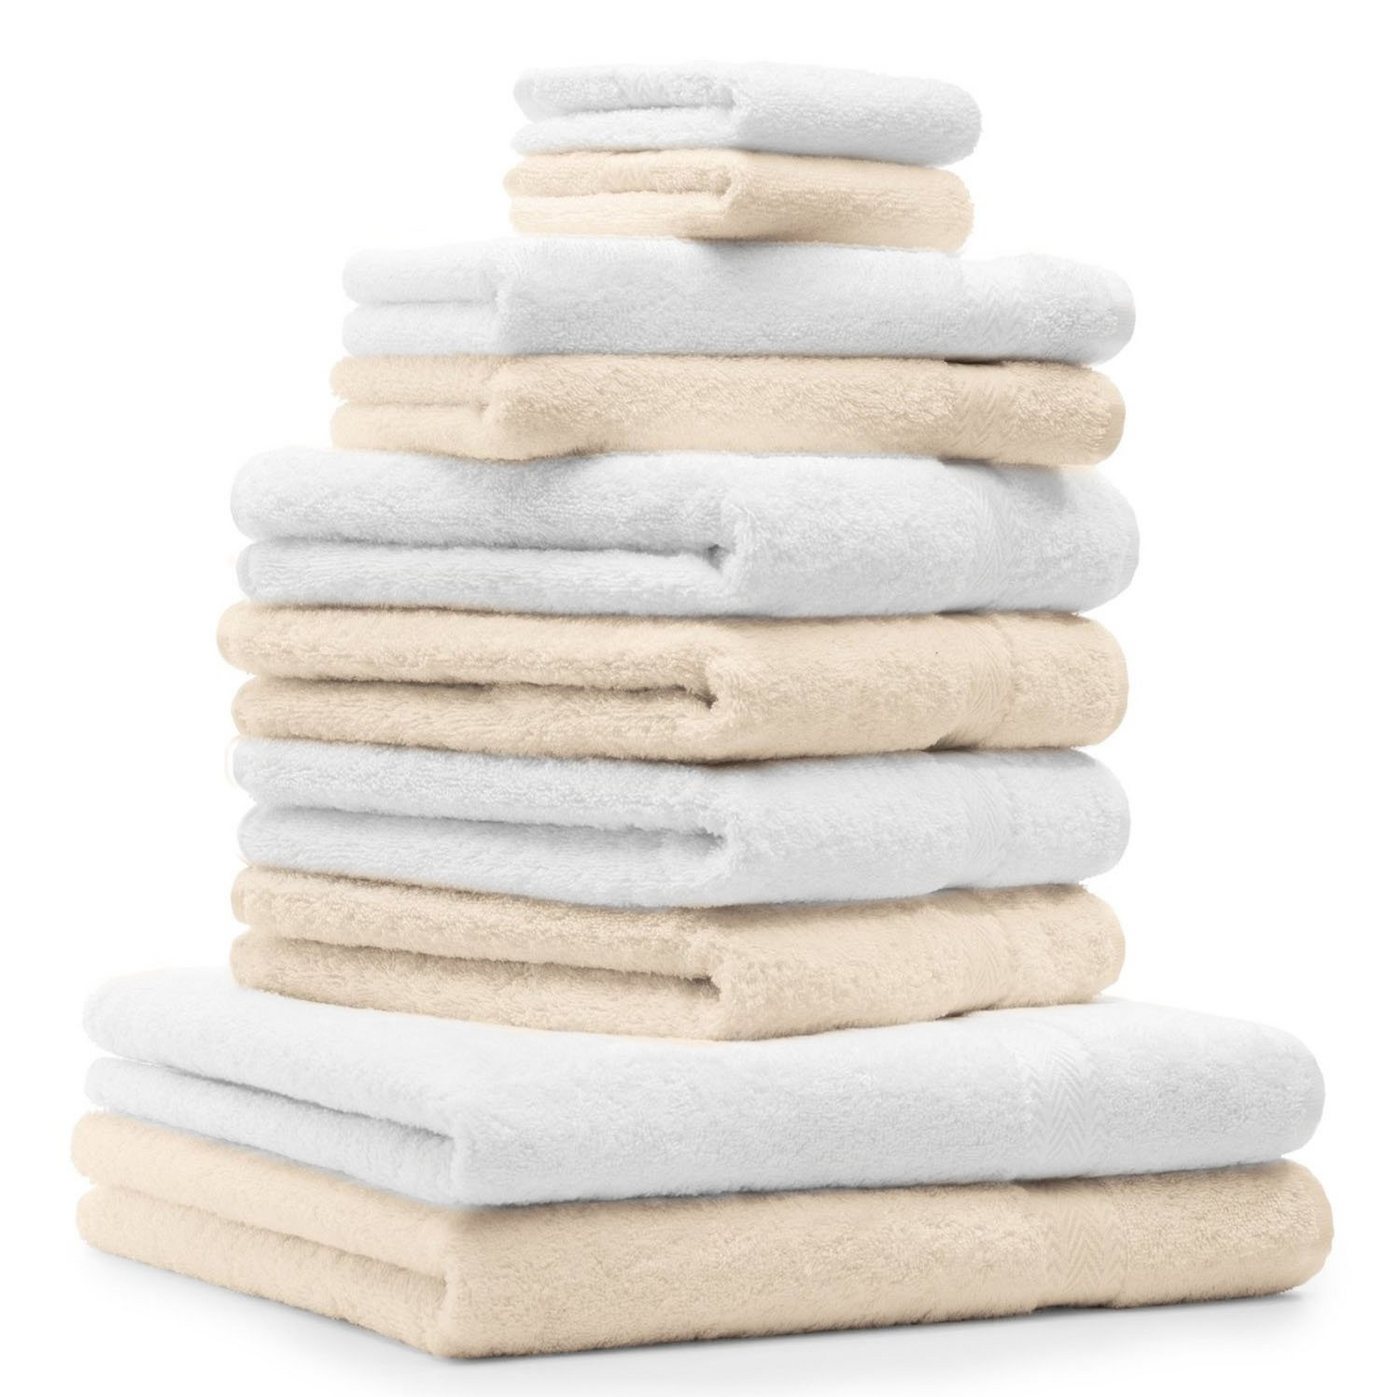 Betz Handtuch Set 10-TLG. Handtuch-Set Classic Farbe beige und weiß, 100% Baumwolle von Betz